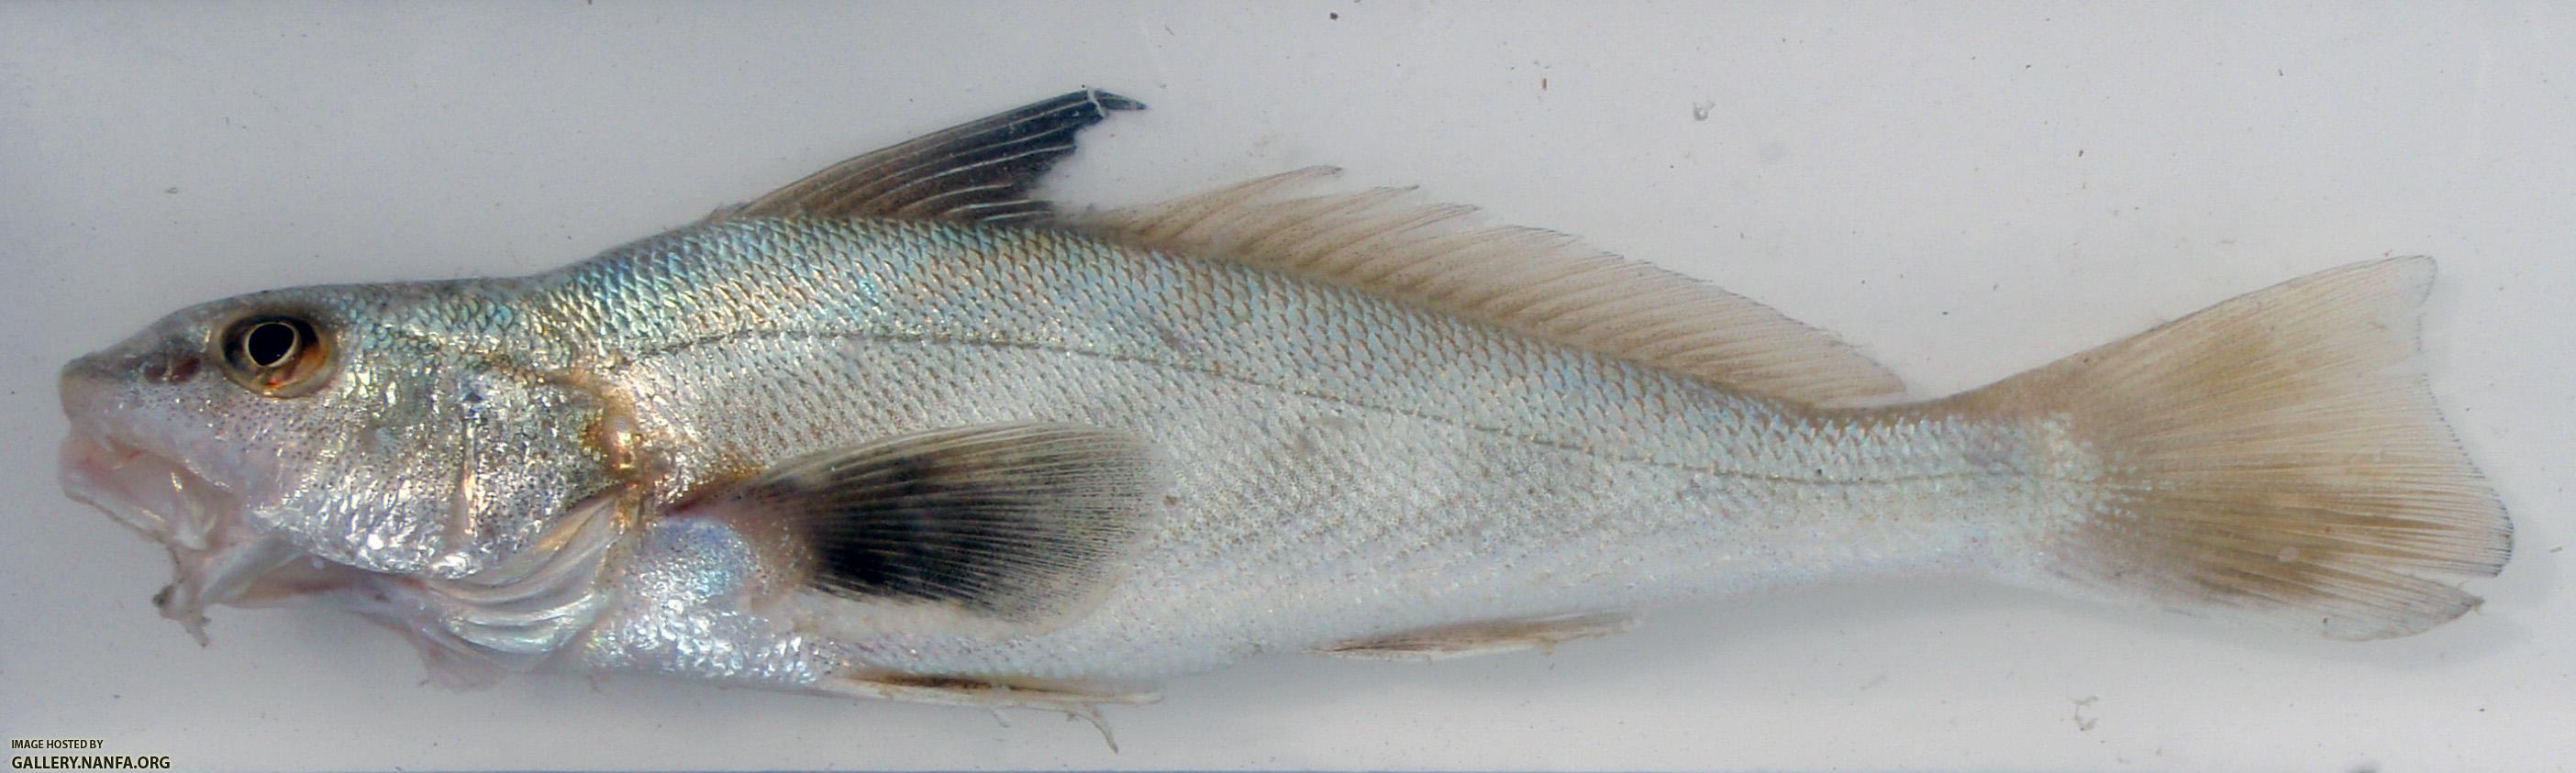 Southern Kingfish